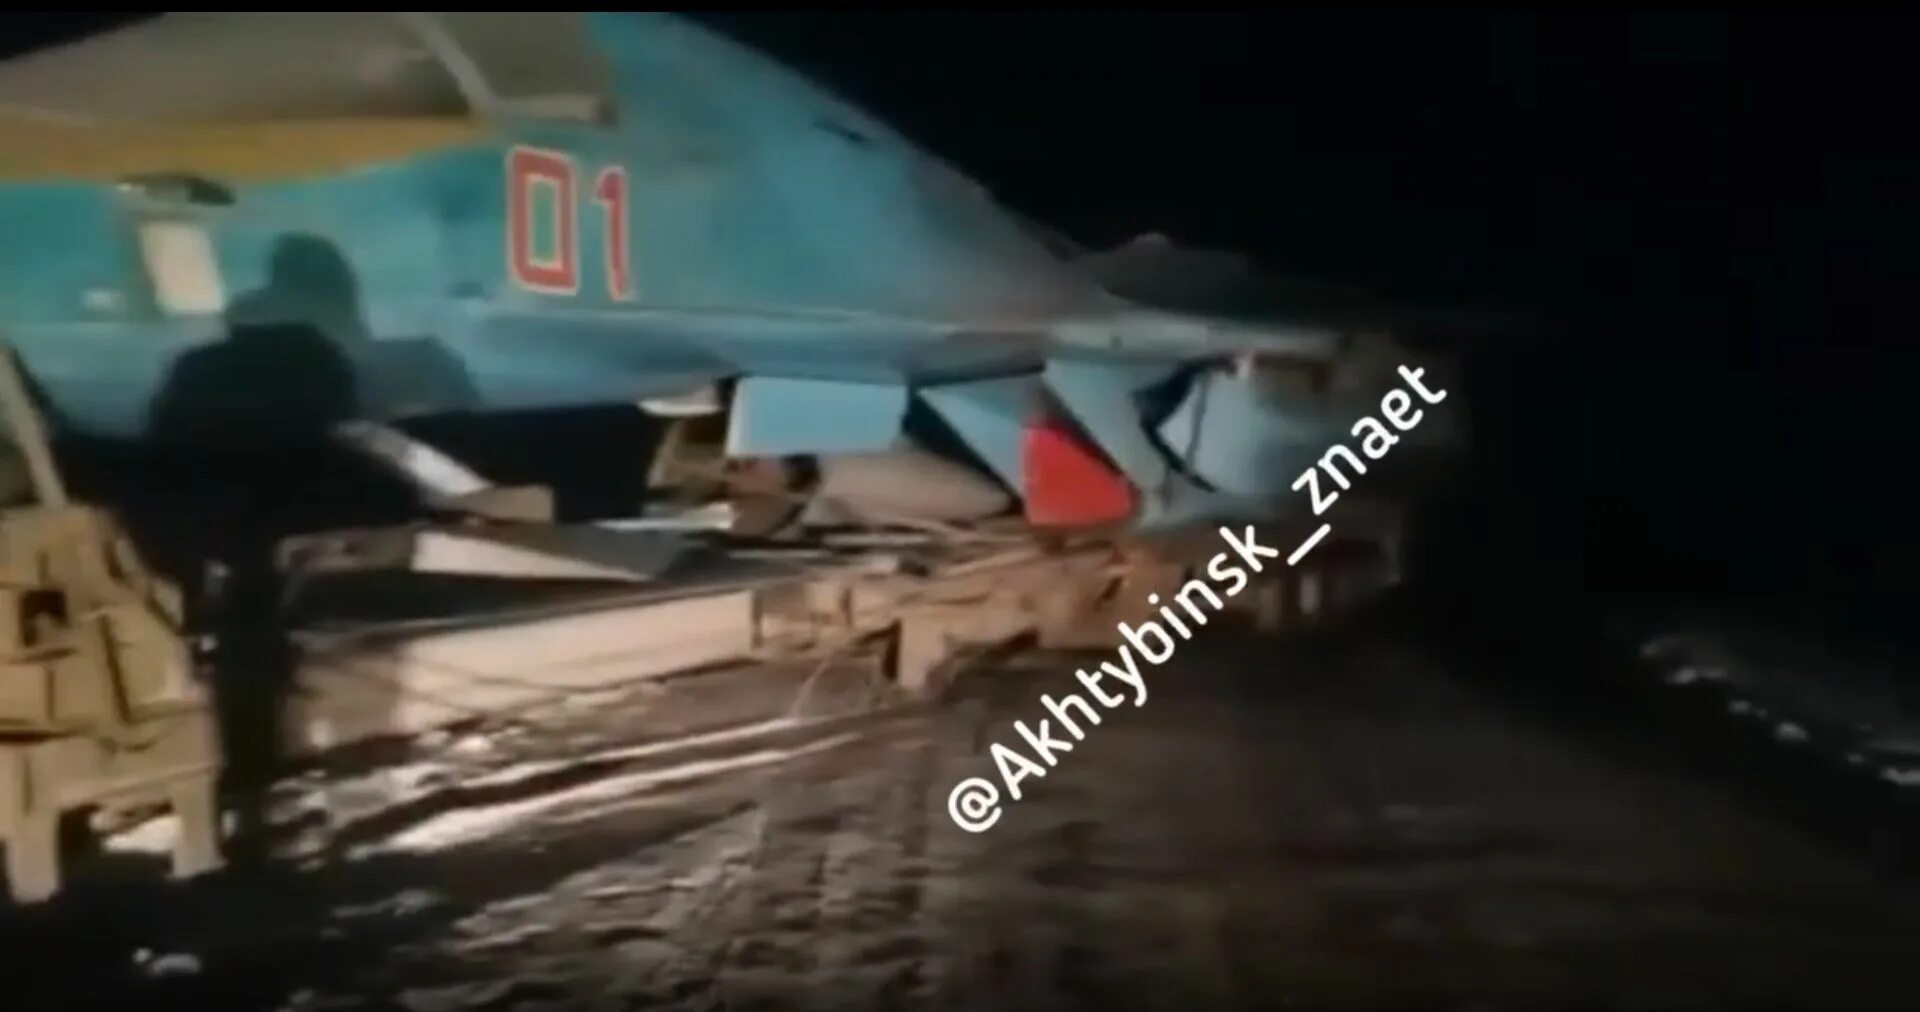 Сгорел су 34. Су-34 Бутурлиновка авария. Су 34 01 красный. Су-34 происшествие в Щелково. Су-34 в Бутурлиновке.